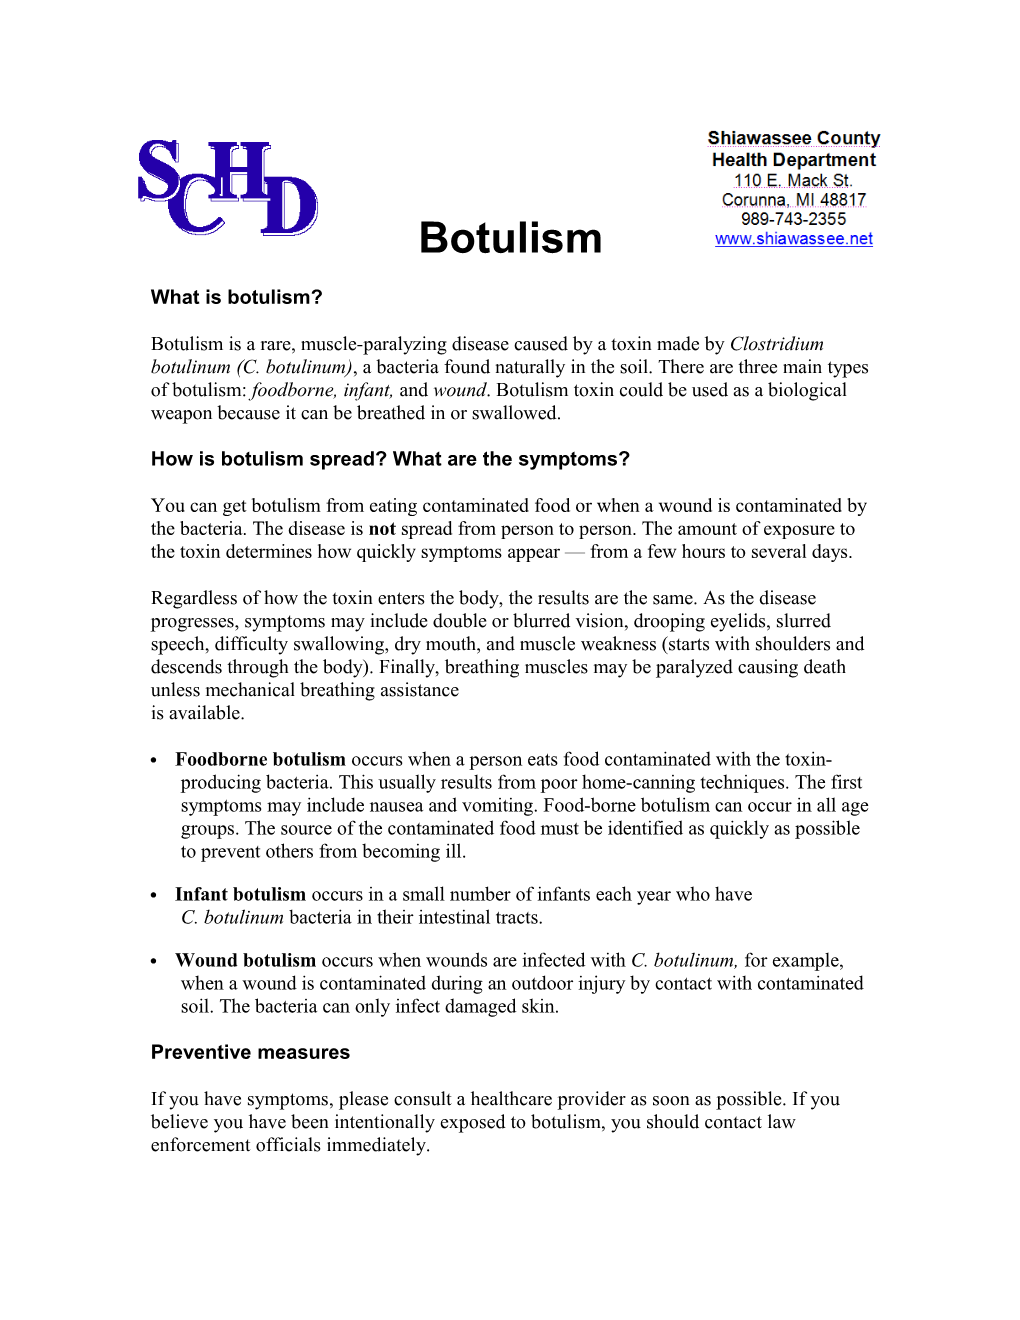 Botulism Fact Sheet (English)